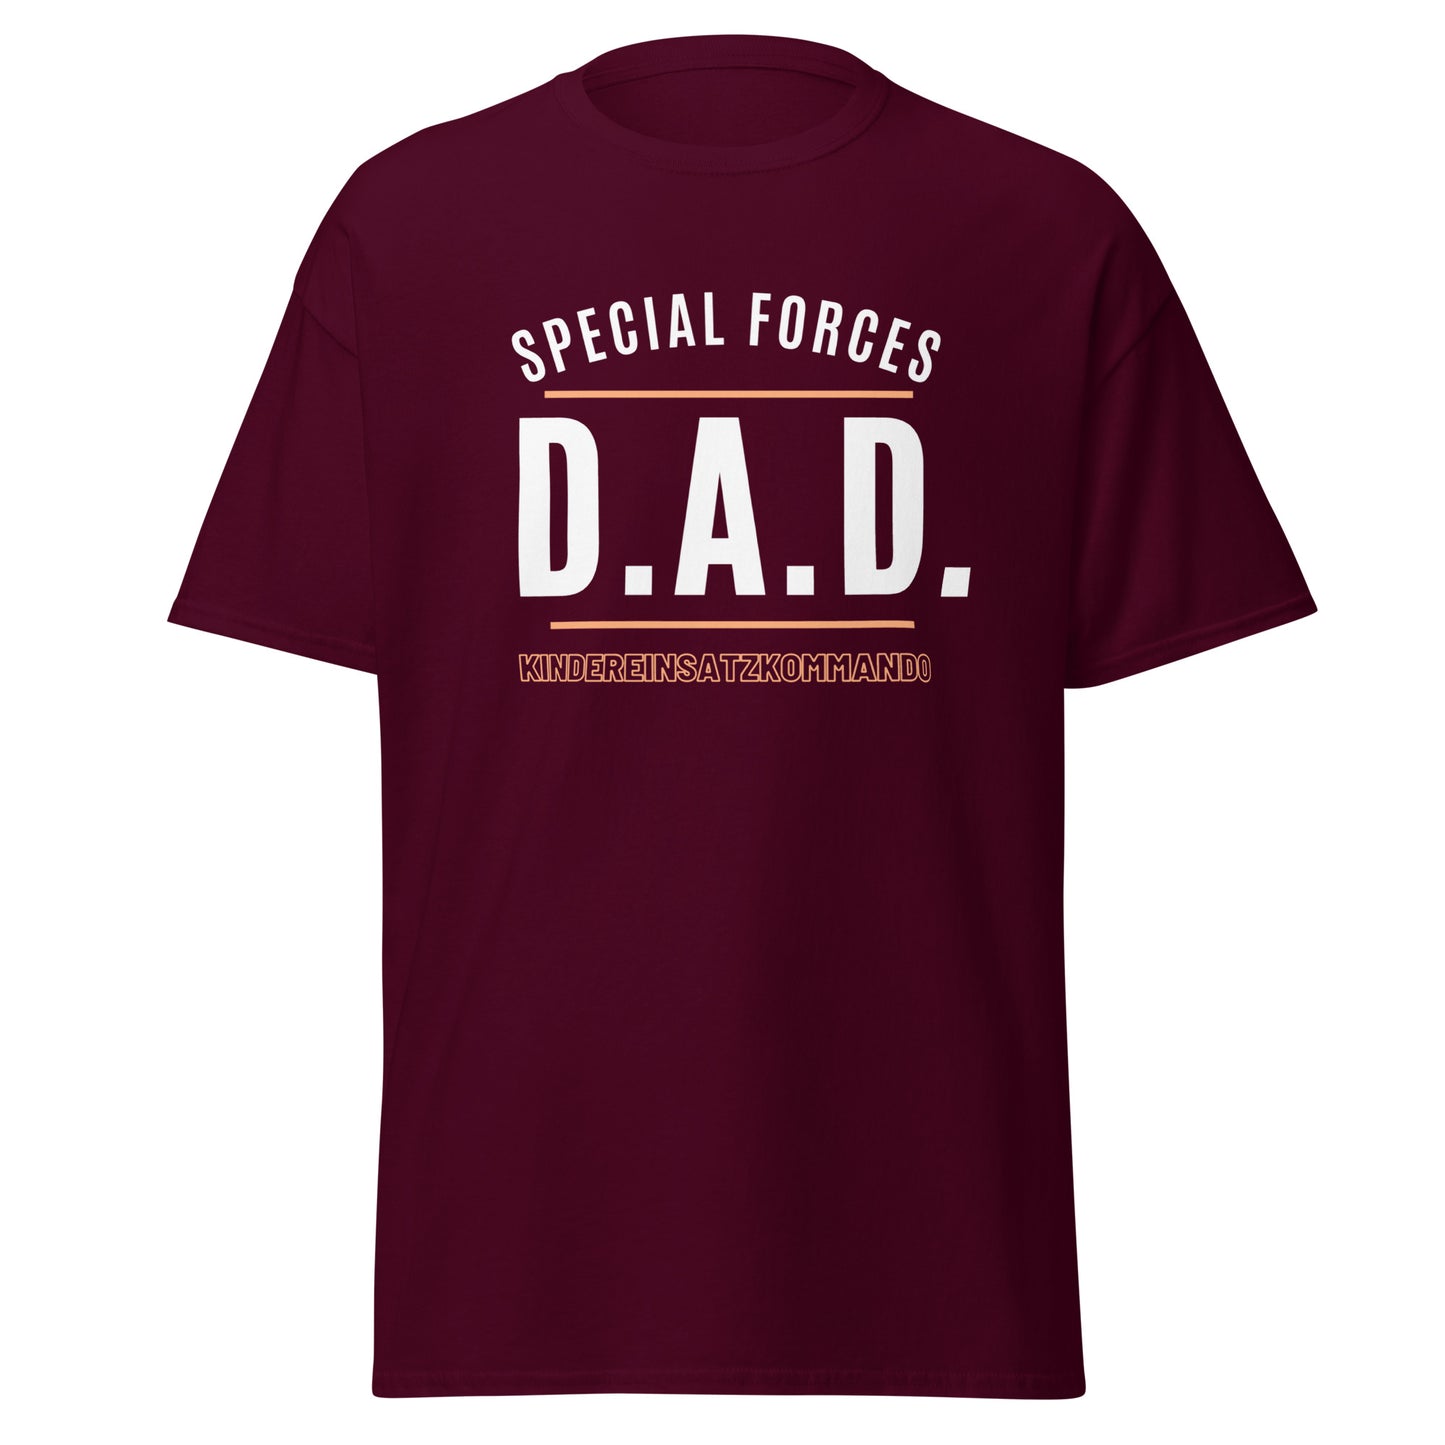 D.A.D. - Statement auf klassischem Herren-T-Shirt :-)